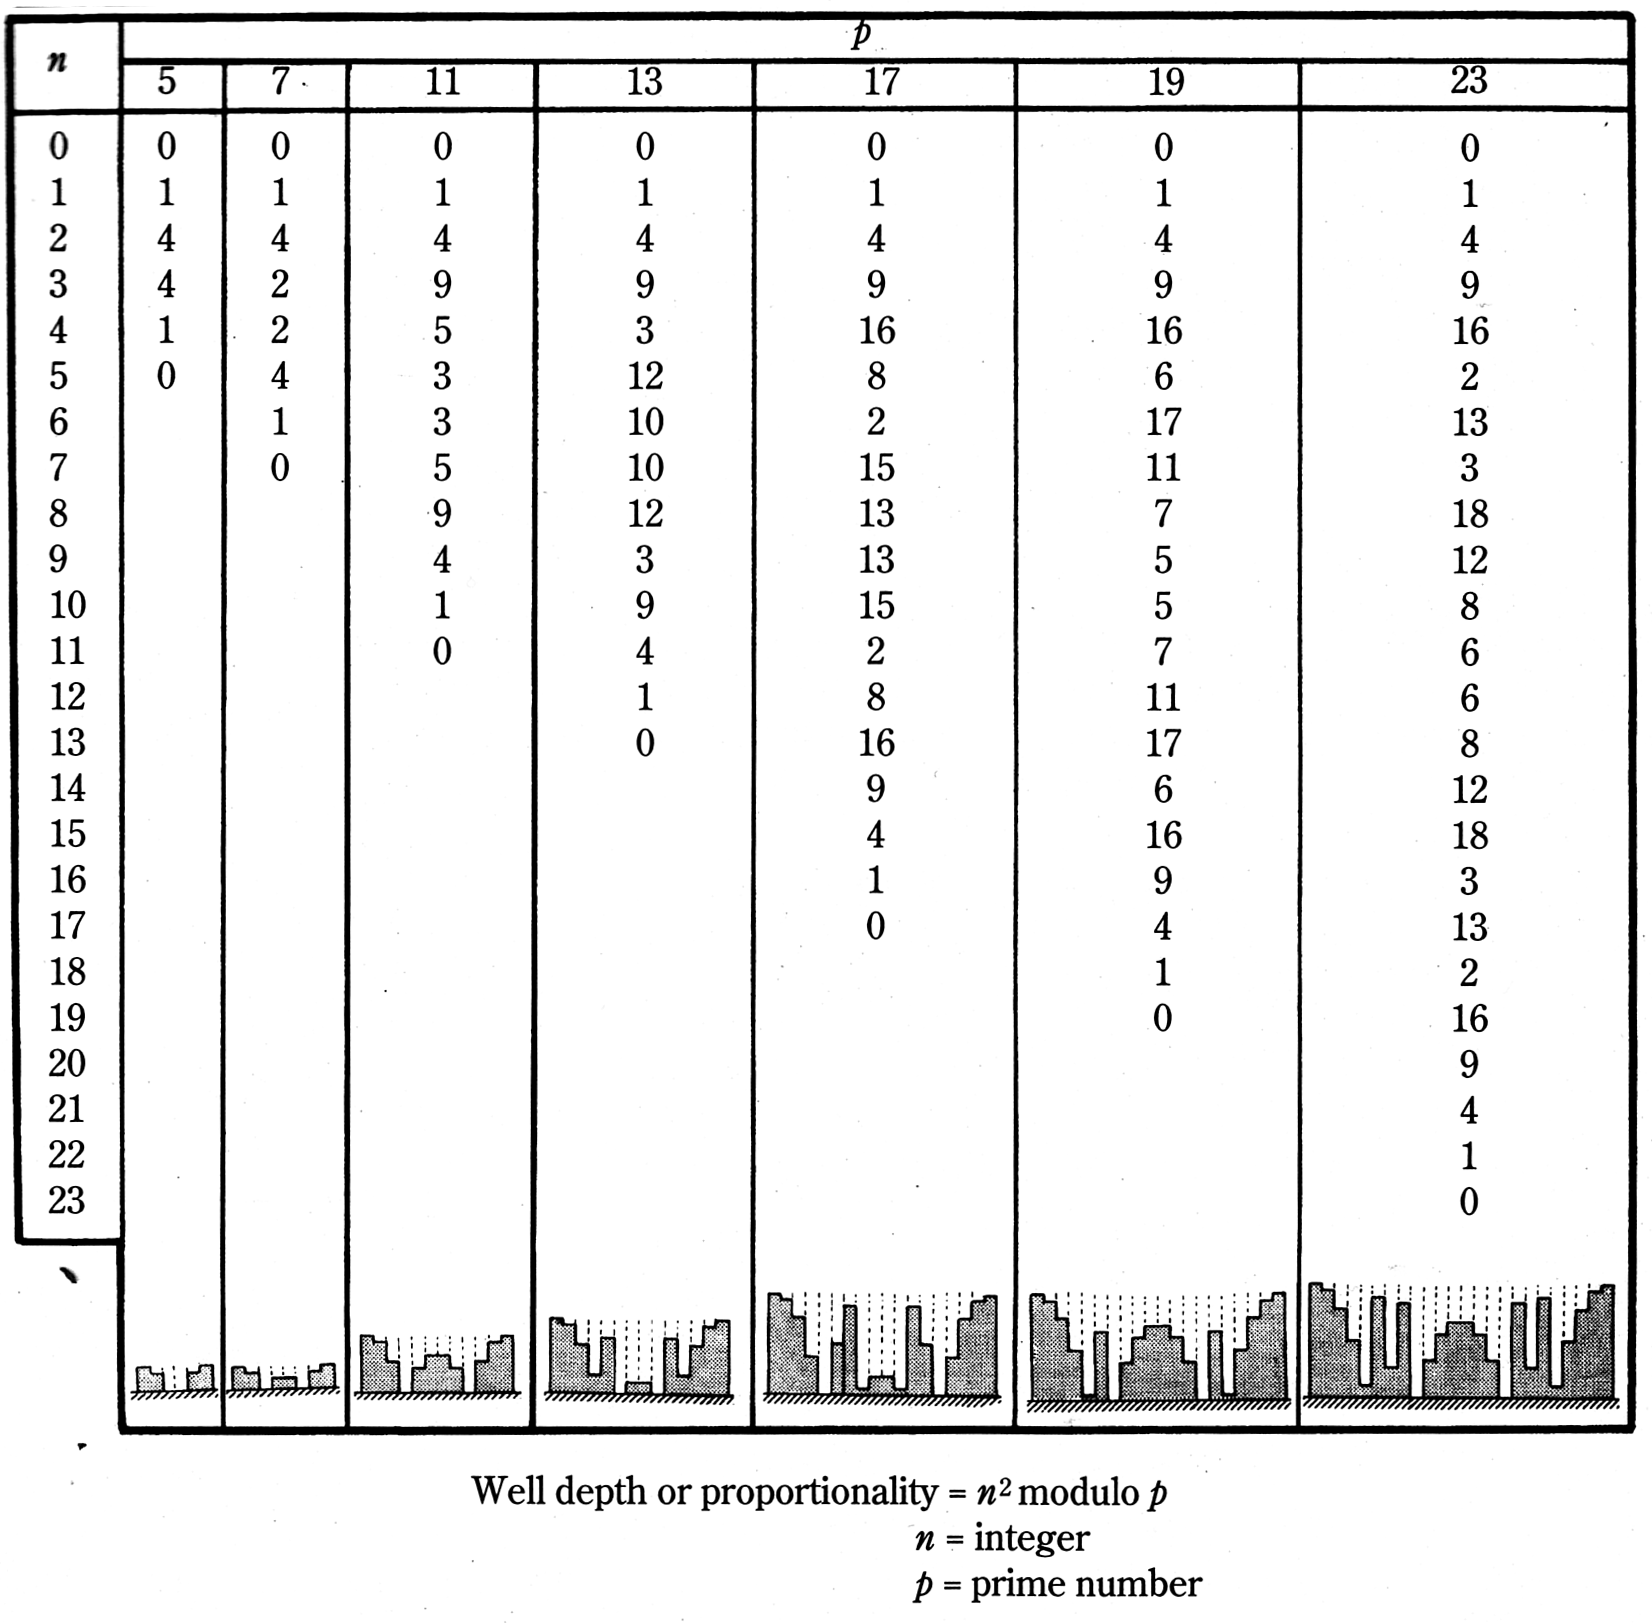 Abbildung 5.4.2.4: Tabelle verschiedener Schröderdiffusoren nach der quadratischen Restfolge mit den relativen Grabentiefen und einer schematischen Zeichnung des Querschnitts(Everest 2001, S.295)